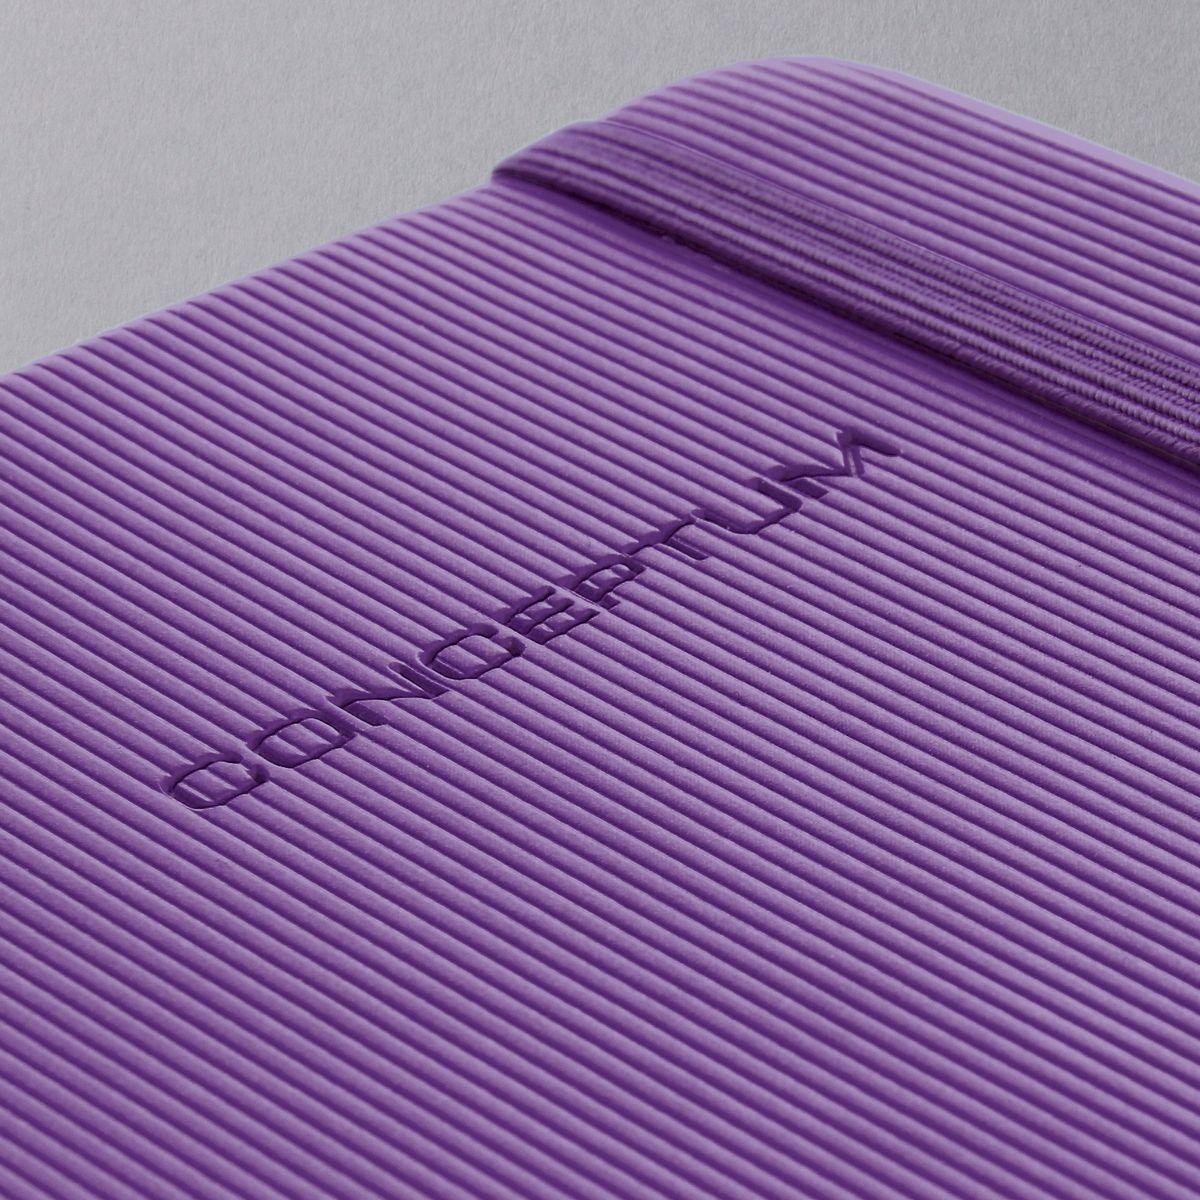 Notizbuch-Conceptum-design-farbig-detail-violet-A